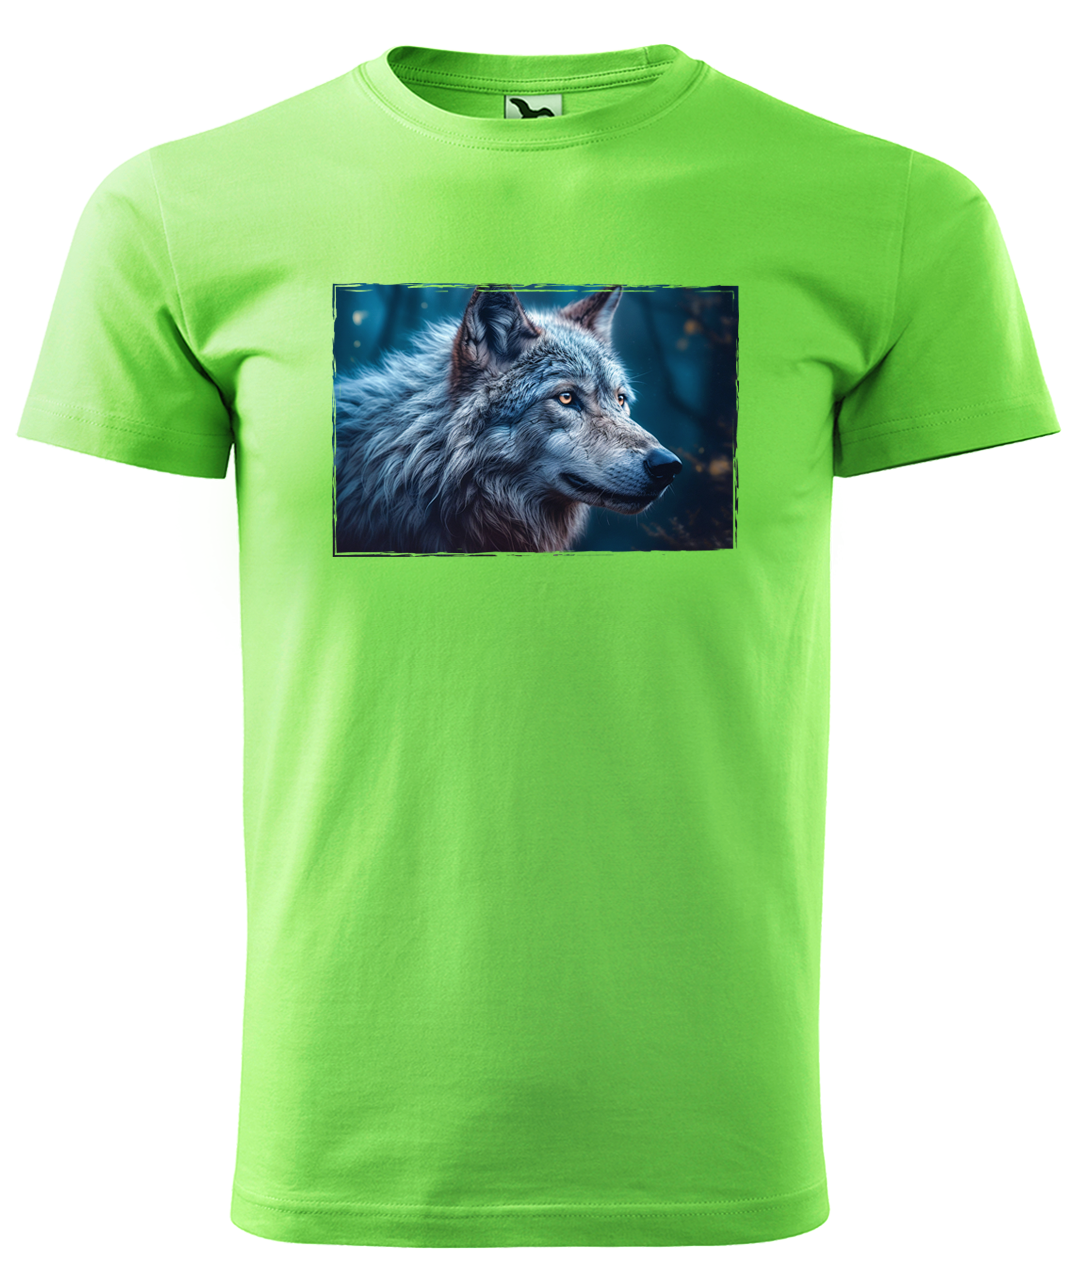 Dětské tričko s vlkem - Modrý vlk Velikost: 4 roky / 110 cm, Barva: Apple Green (92)